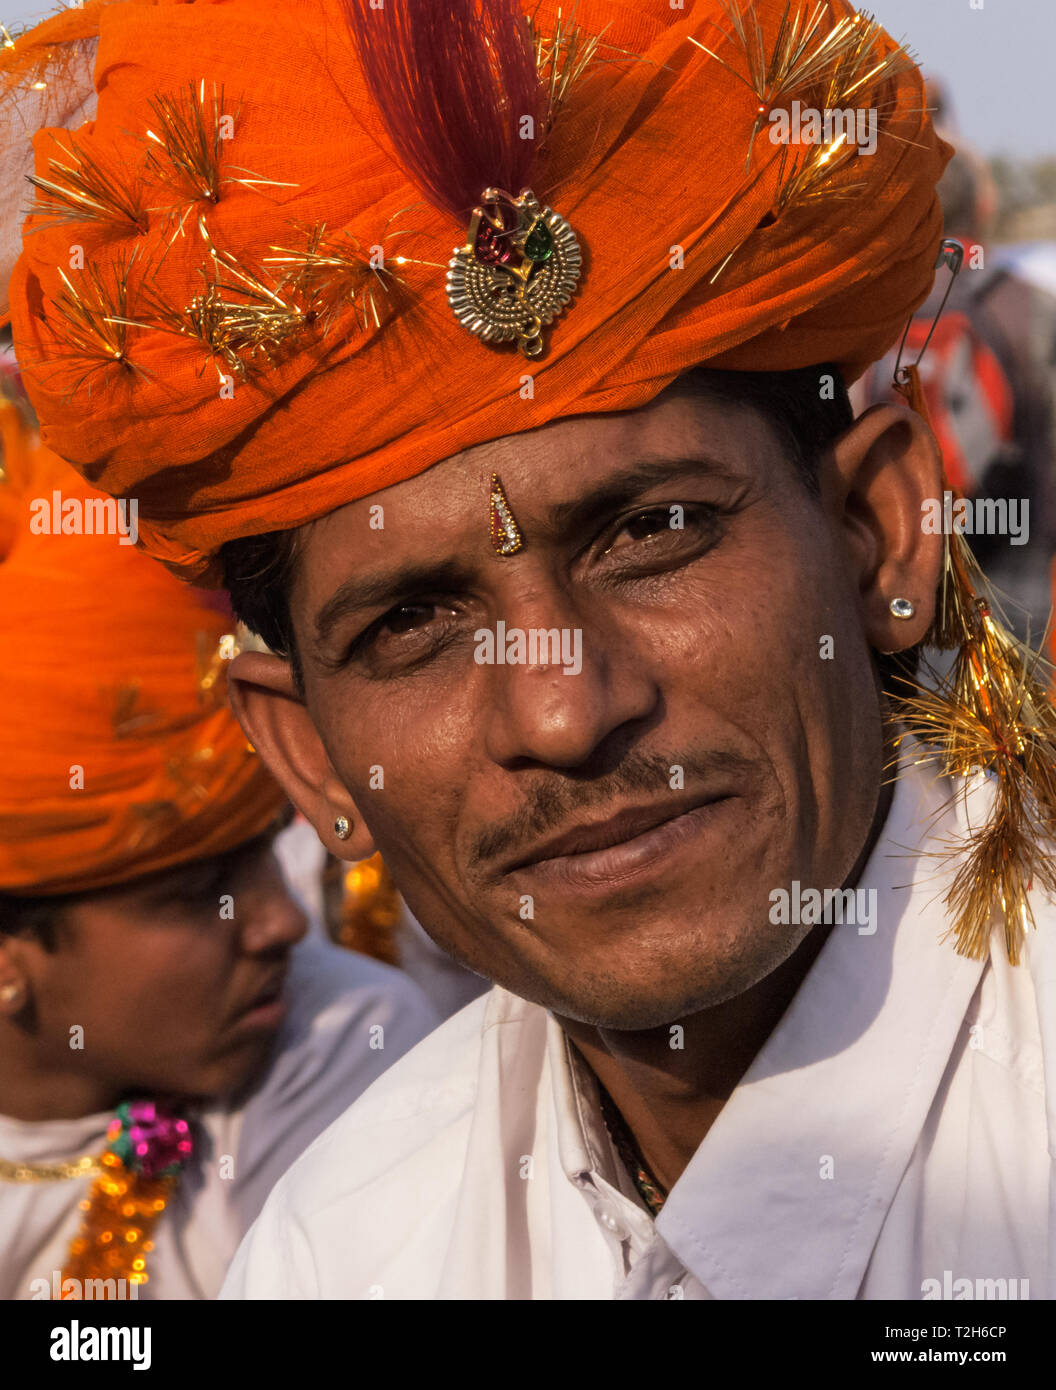 Sorridenti Rajput musicista in abito tradizionale per l'annuale festival di elefante a Jaipur, India Foto Stock